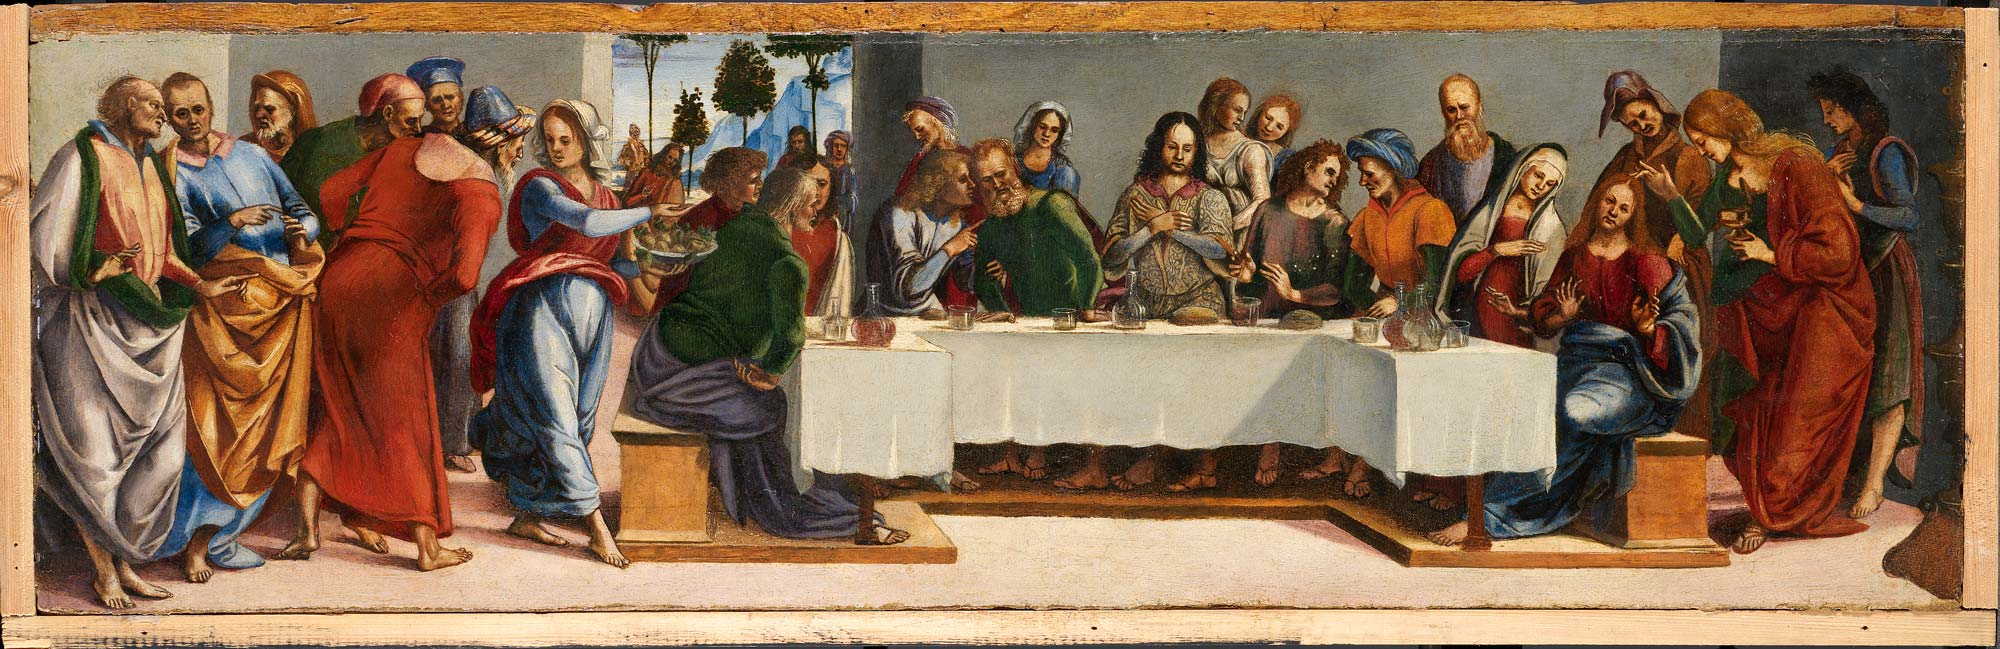 Luca Signorelli, Cristo in casa di Simone il Fariseo (1488-89; olio su tavola; Dublino, National Gallery of Ireland)